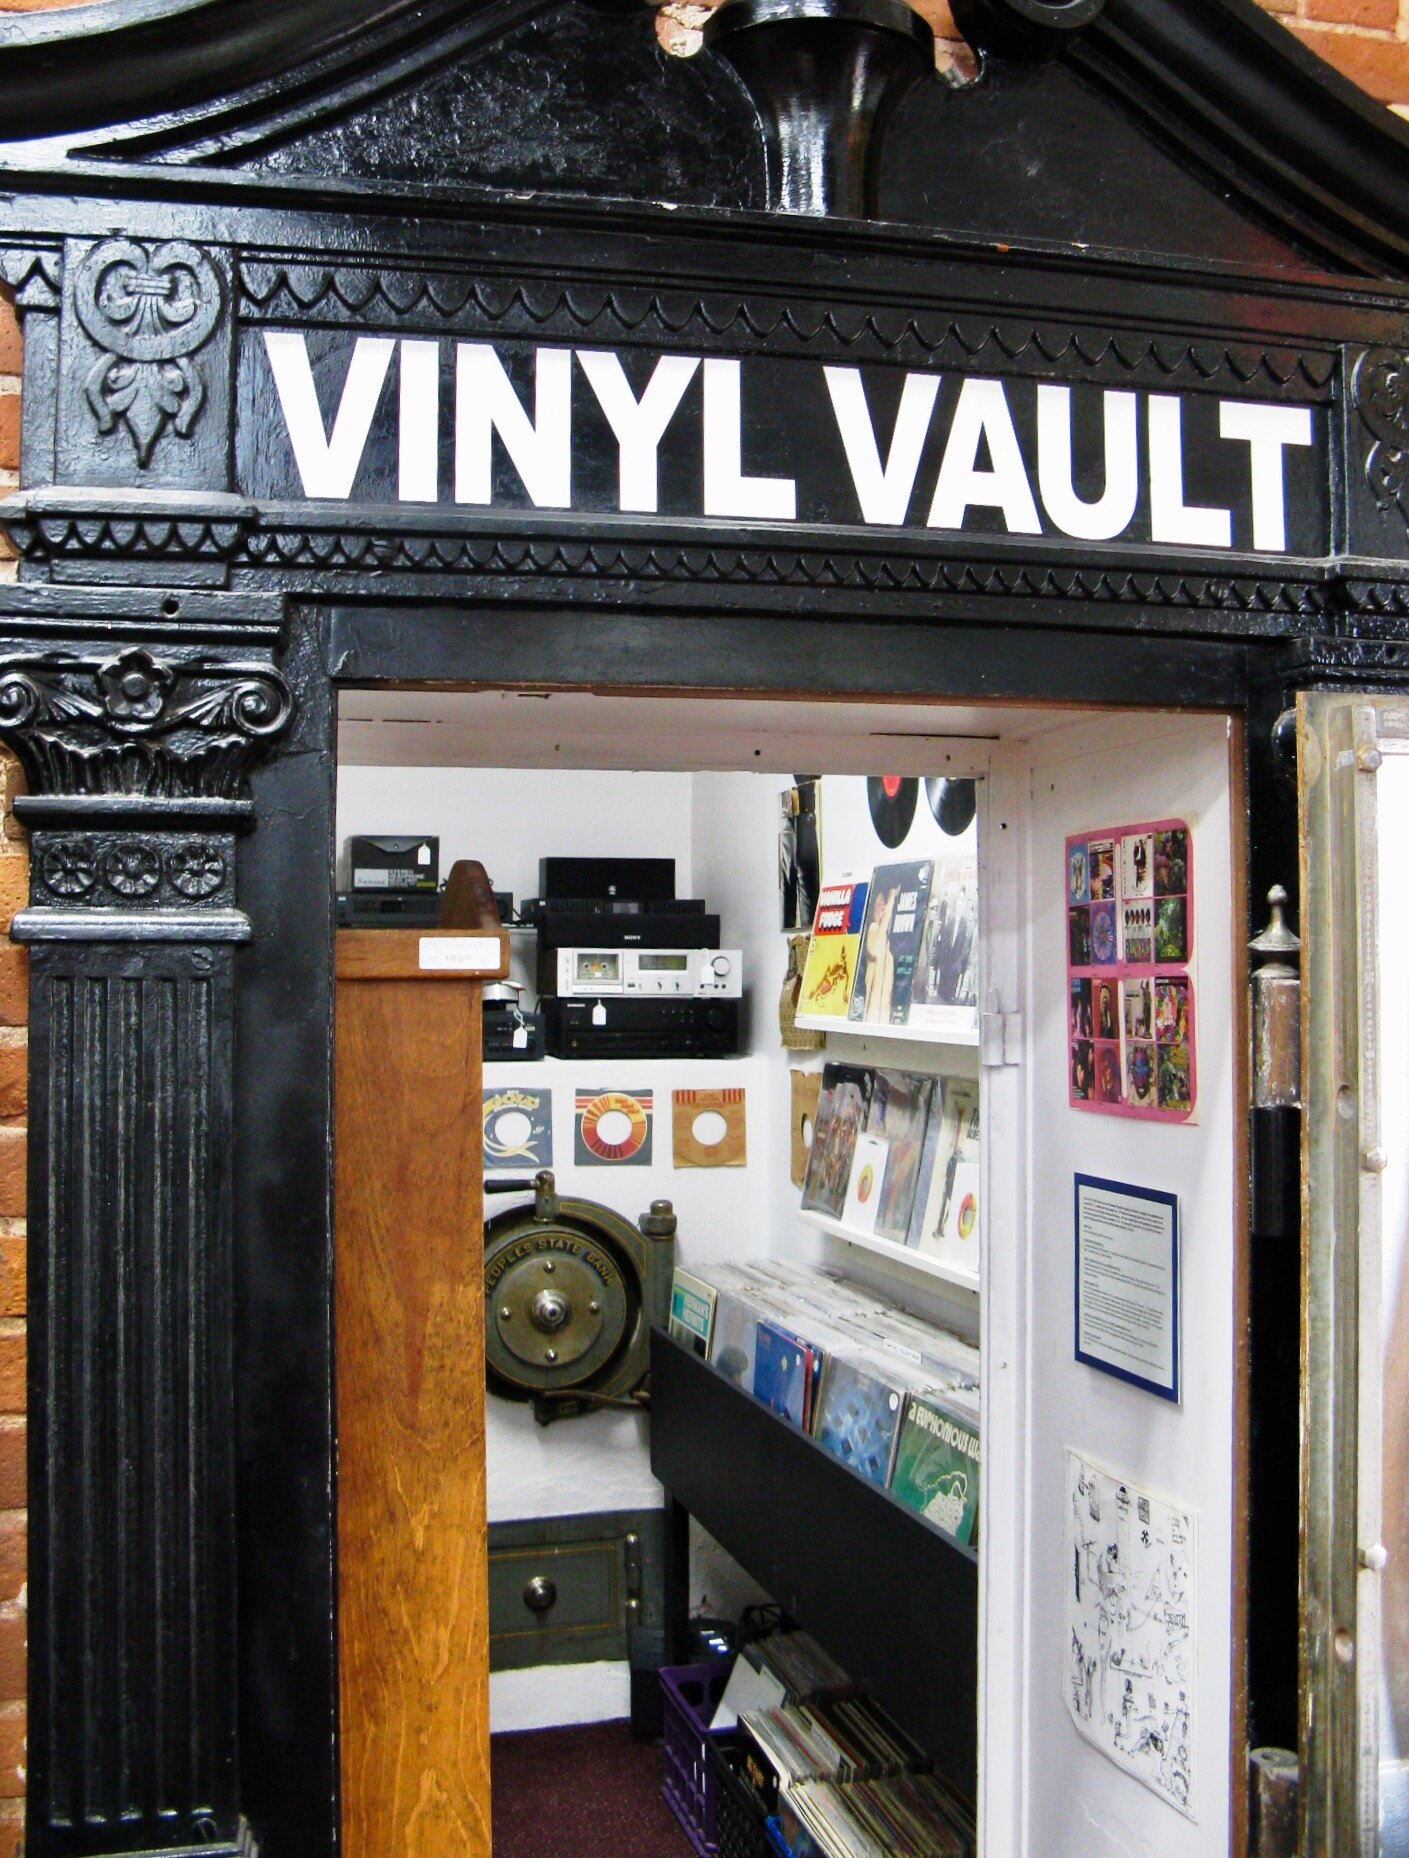 Vinyl Vault Call for CDs - 3 of 4.jpeg